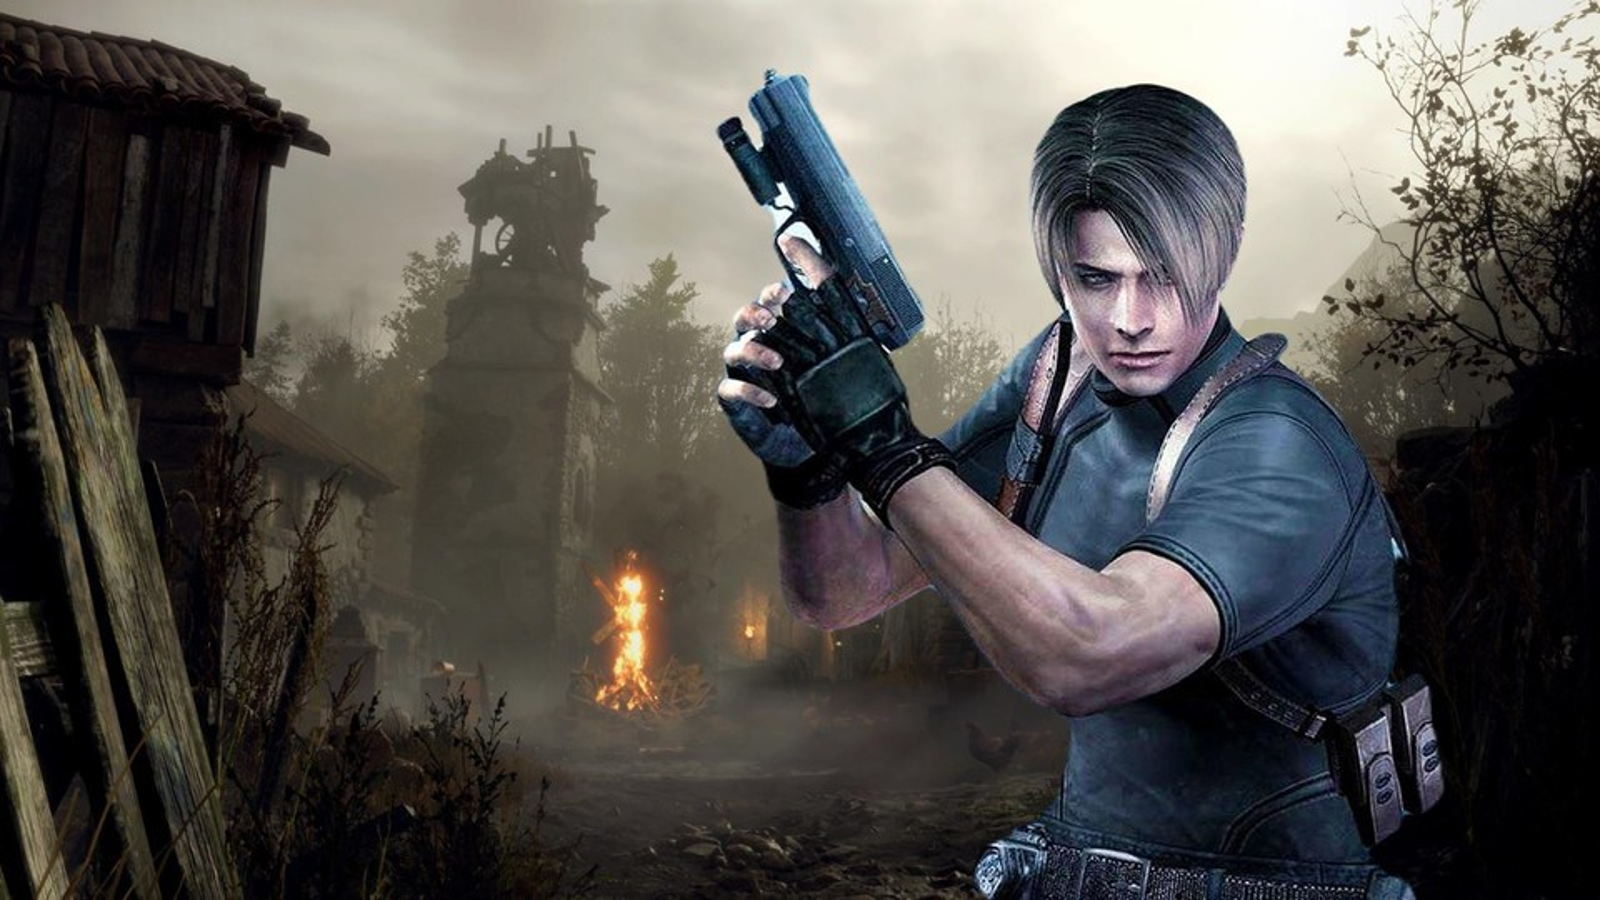 Todos los requisitos de Resident Evil 4 remake para PC